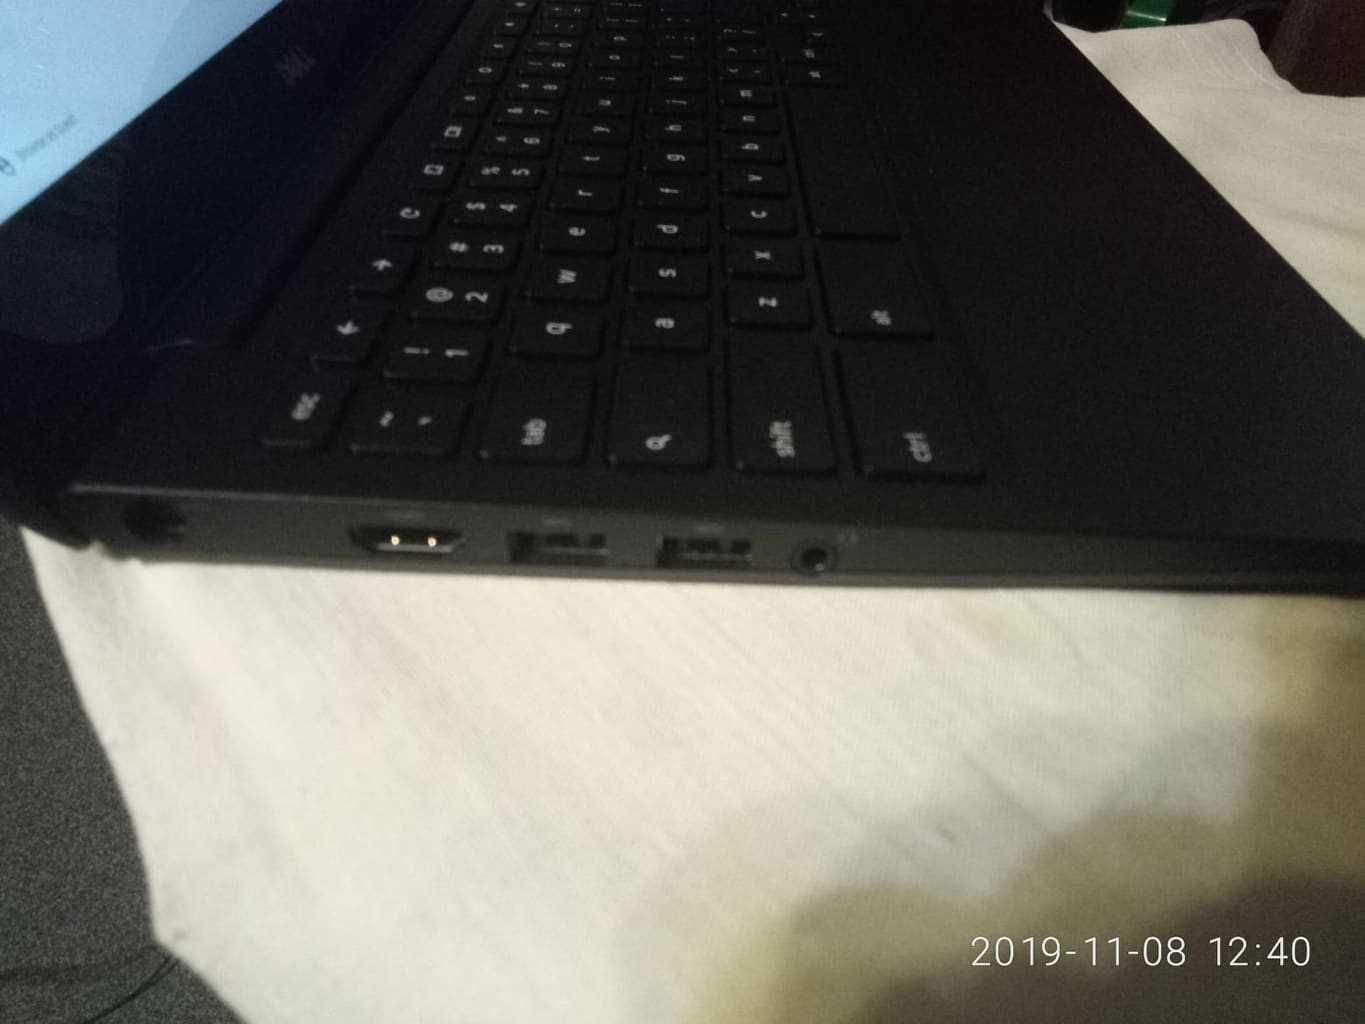 хромбук США надійний ноут ультра нет Dell Chromebook оригінал